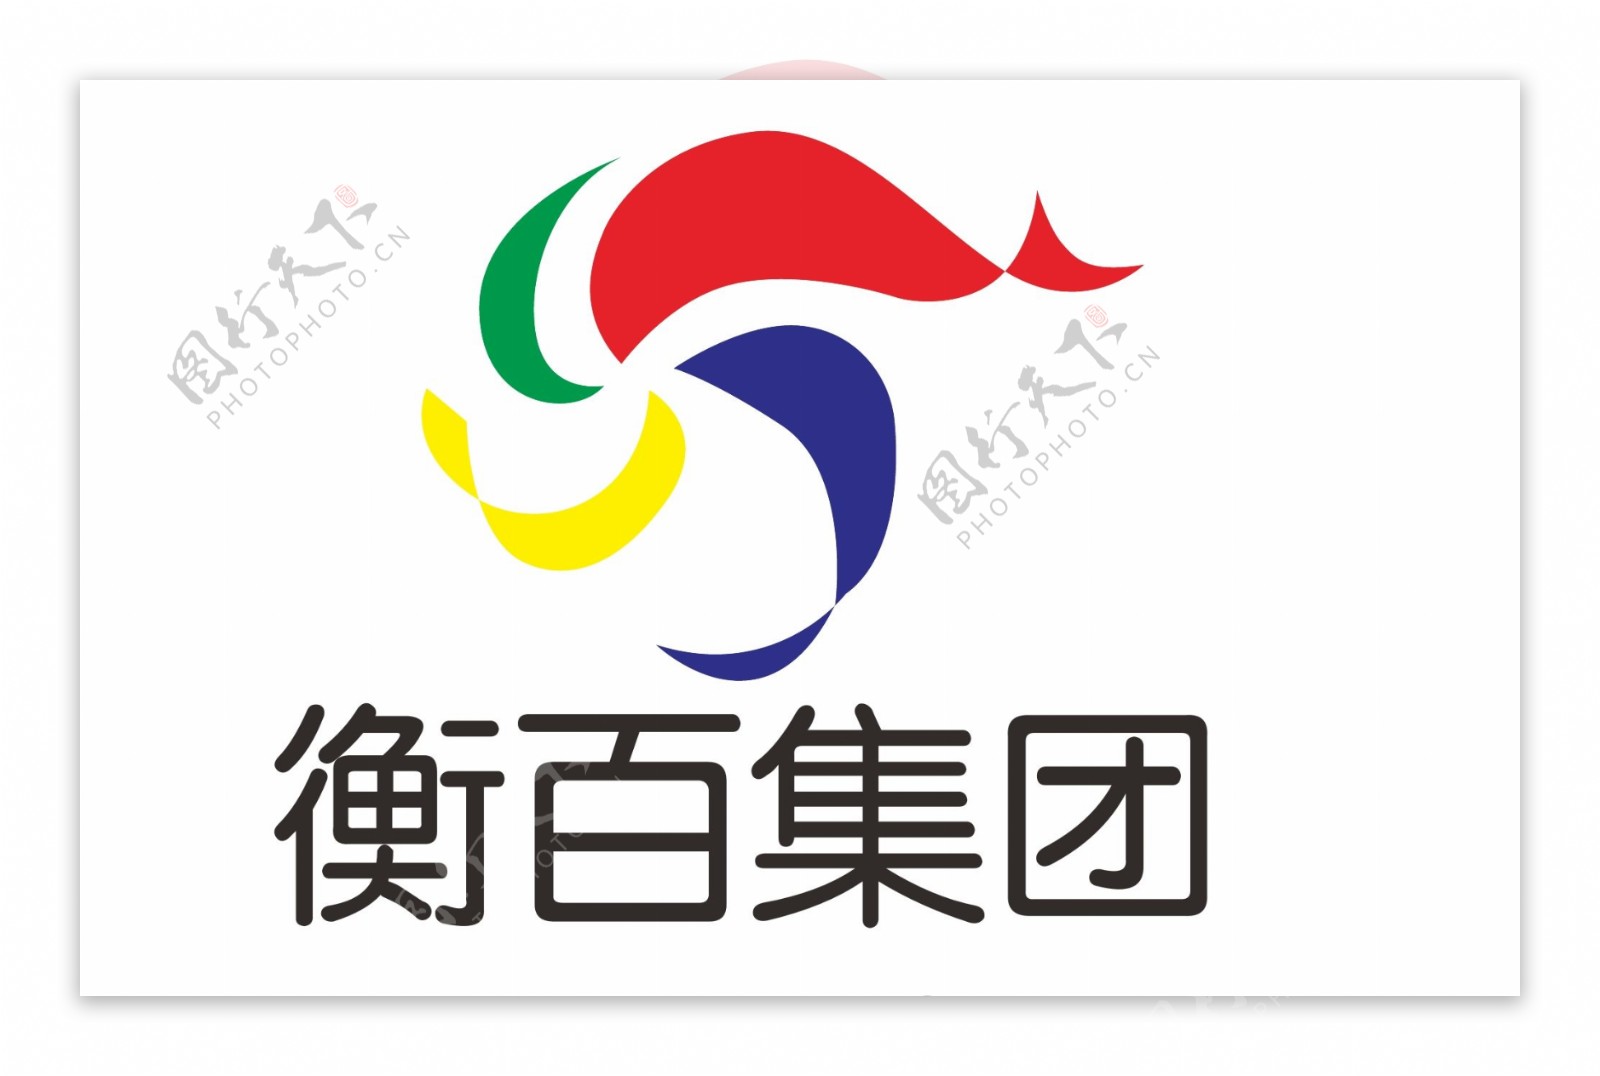 衡水市百货大楼logo